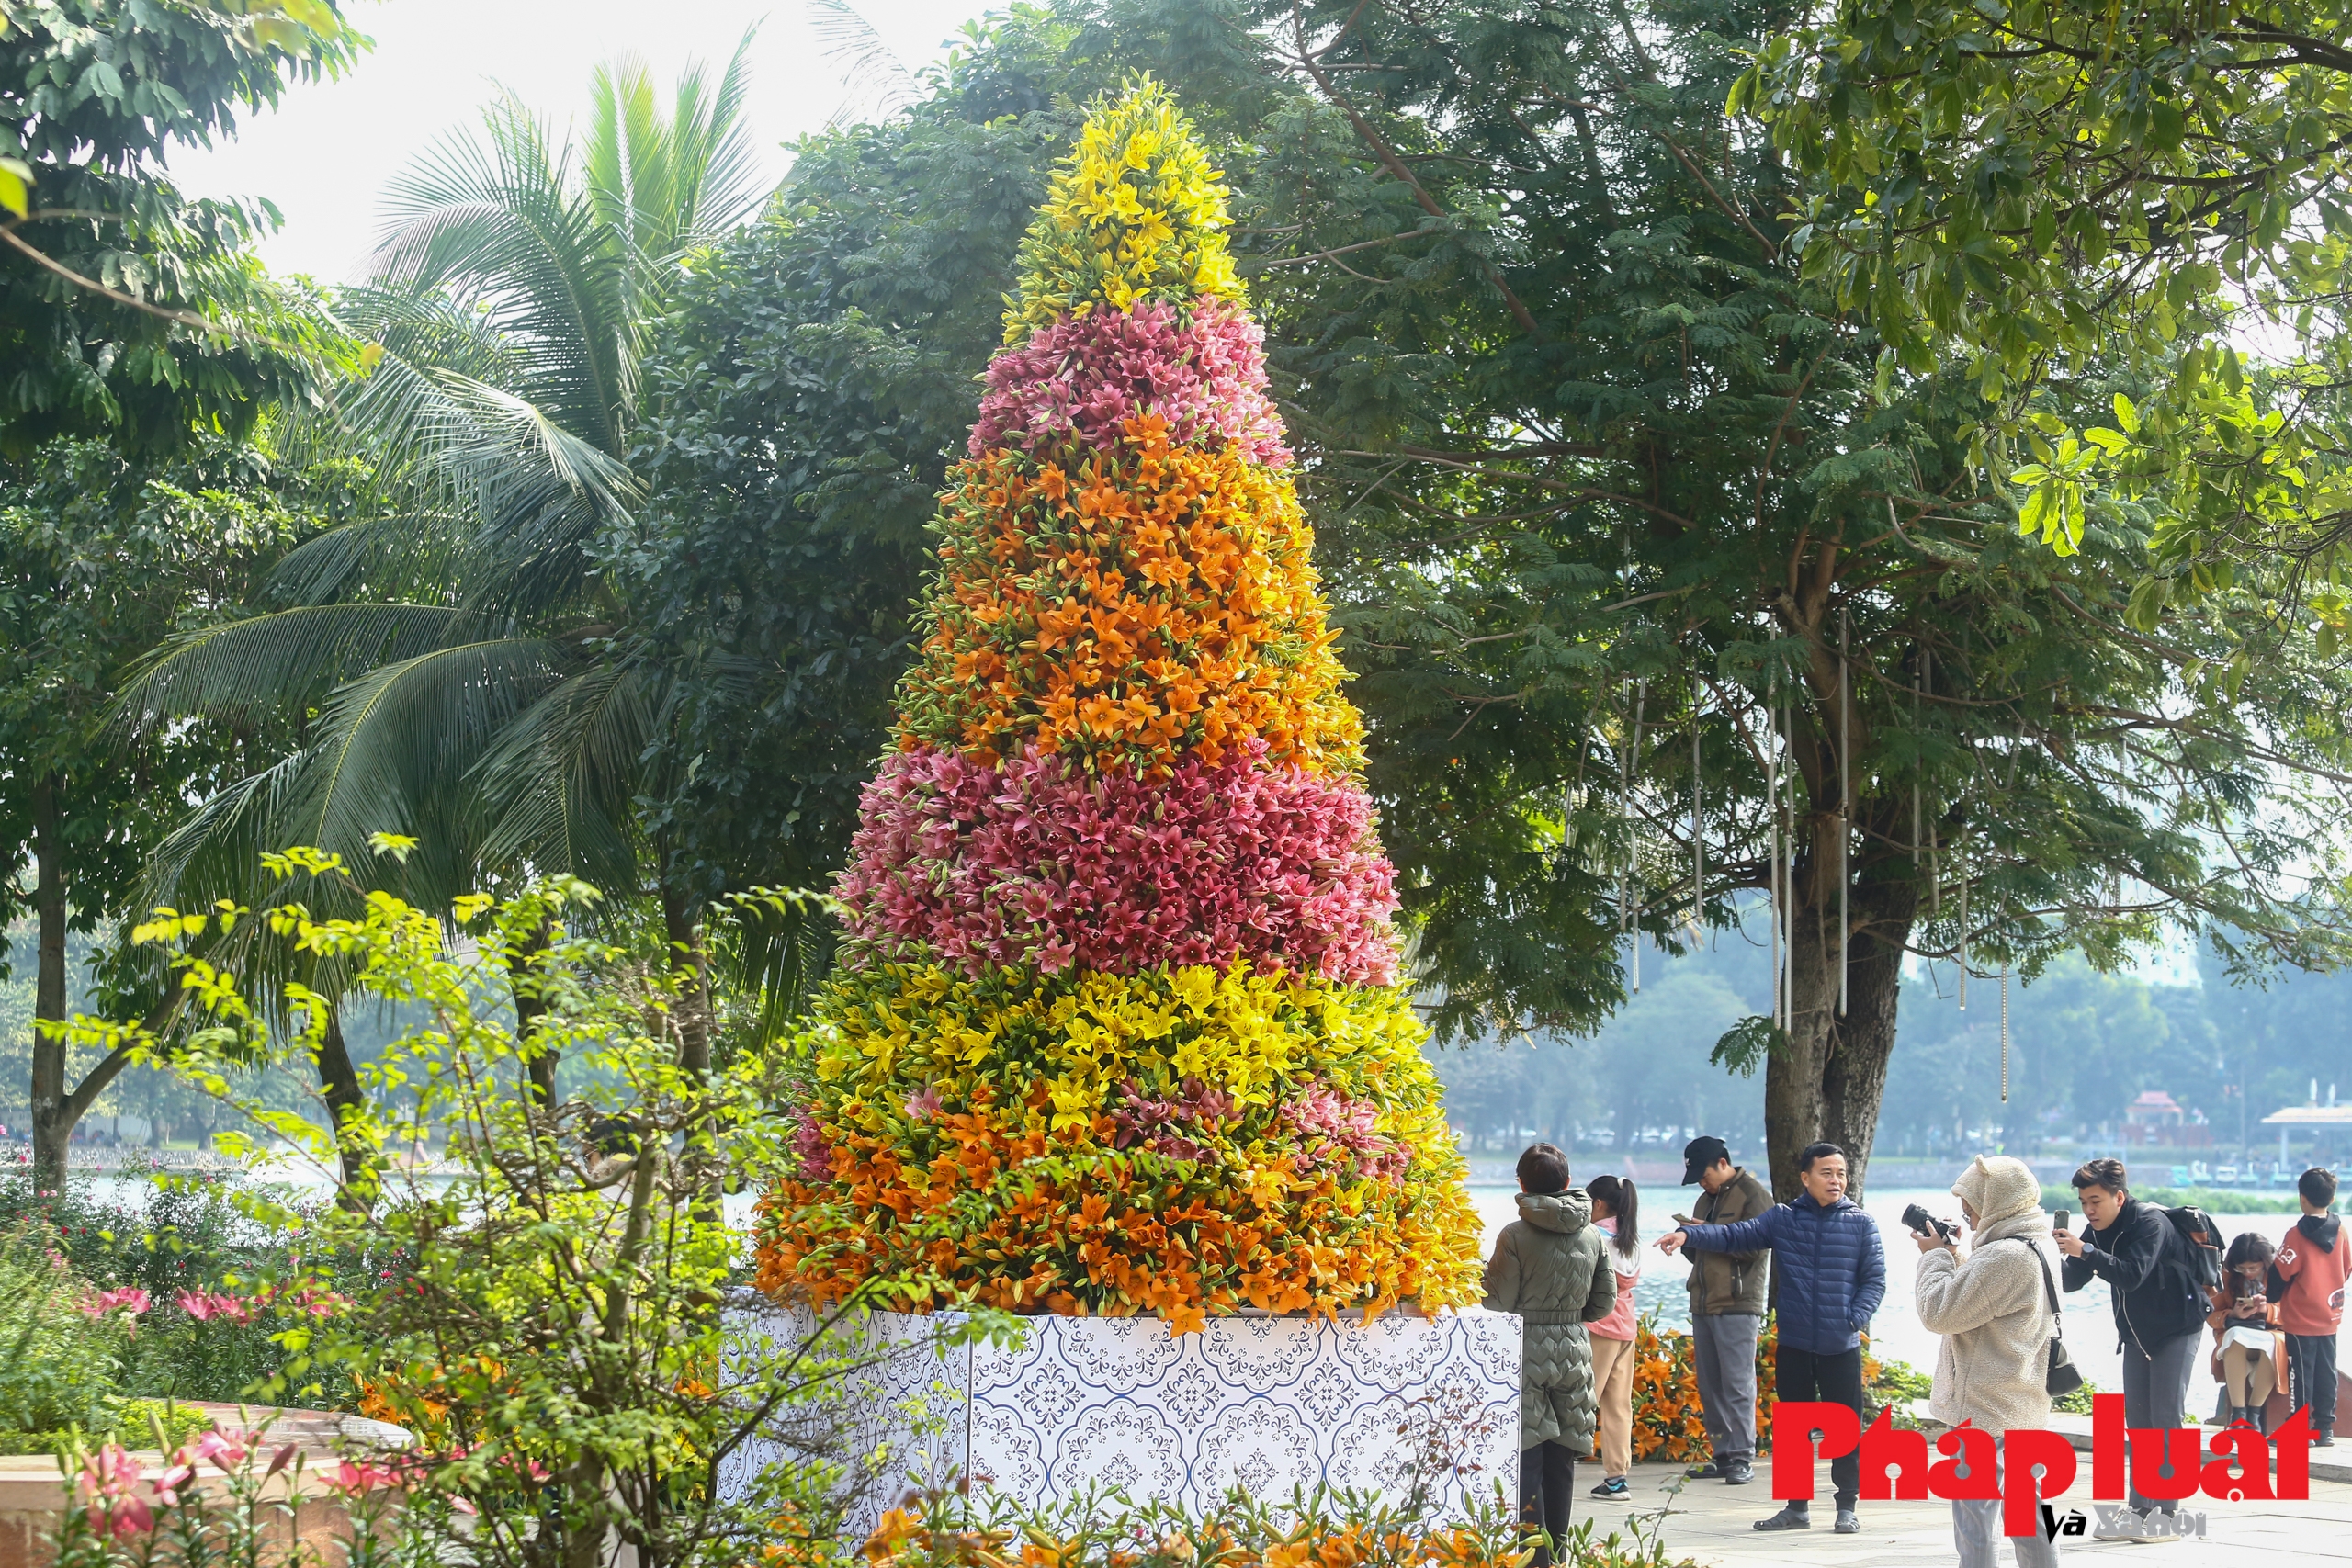 Cận cảnh cây thông Noel làm từ hoa ly độc nhất vô nhị ở Hà Nội